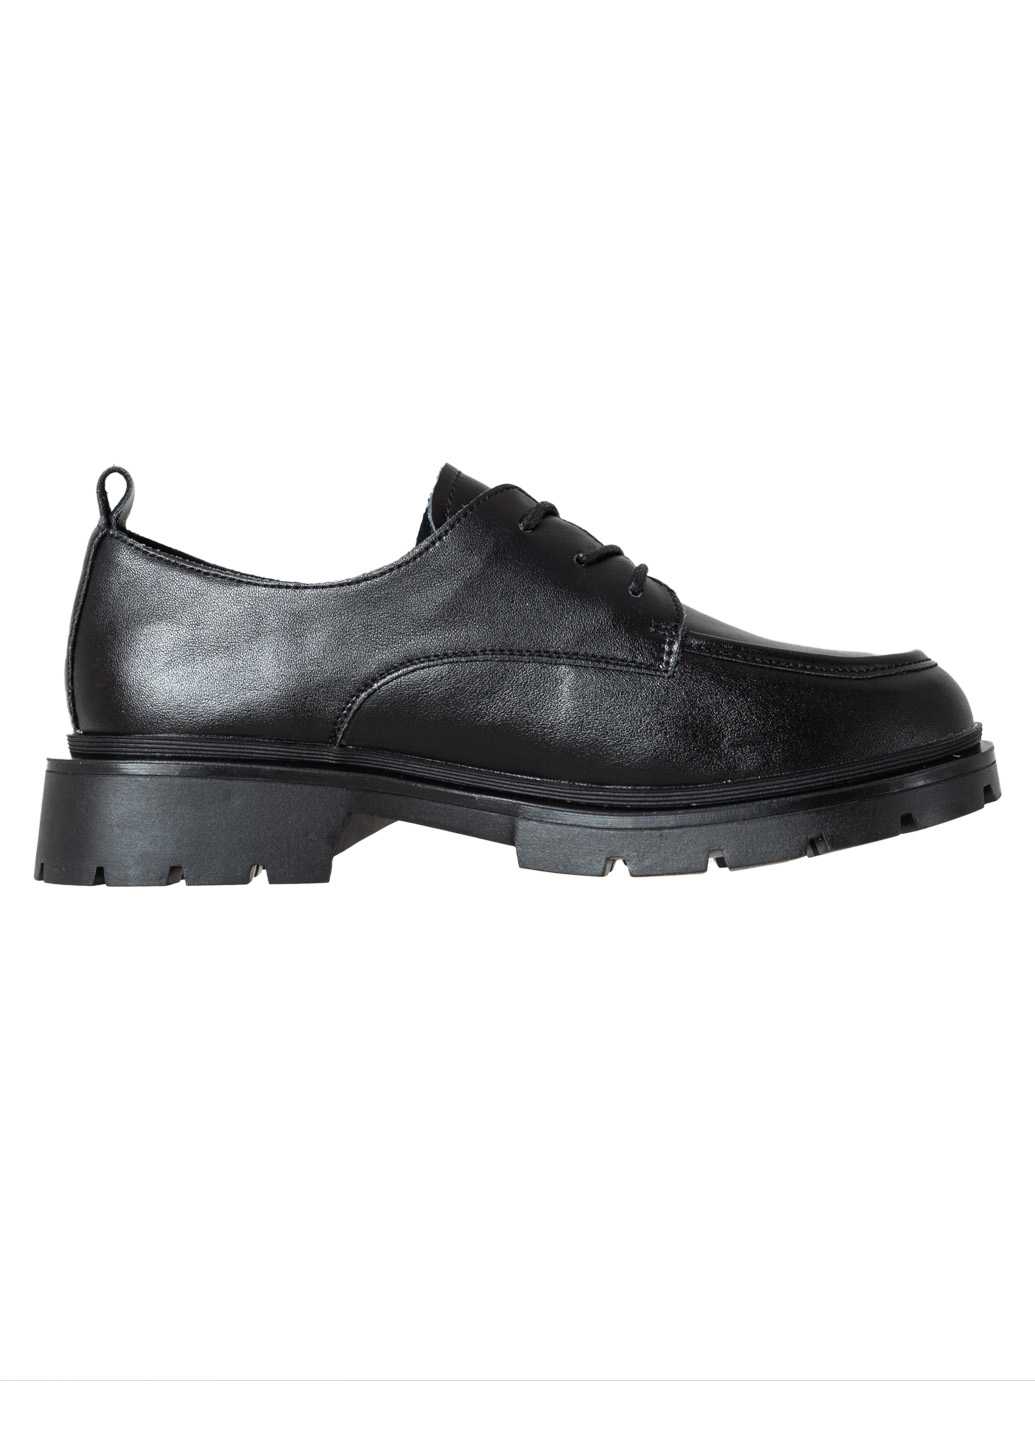 Жіночі туфлі Lifexpert чорного кольору з натуральної шкіри